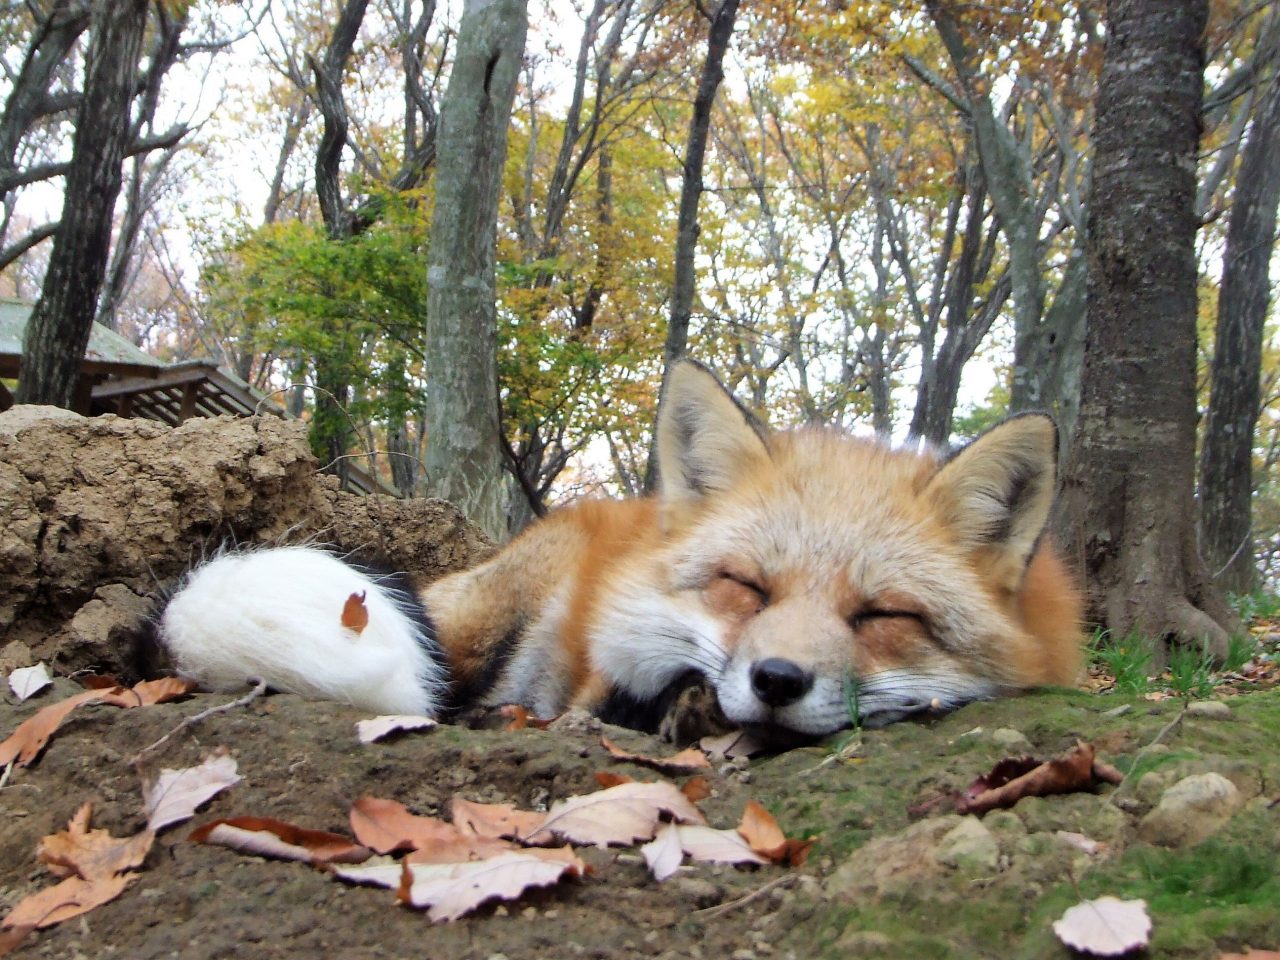 冬季毛绒绒的治愈系小狐狸!这里是散养了100余只狐狸，少数可以让人近距离接触它们的动物园“宫城藏王狐狸村”